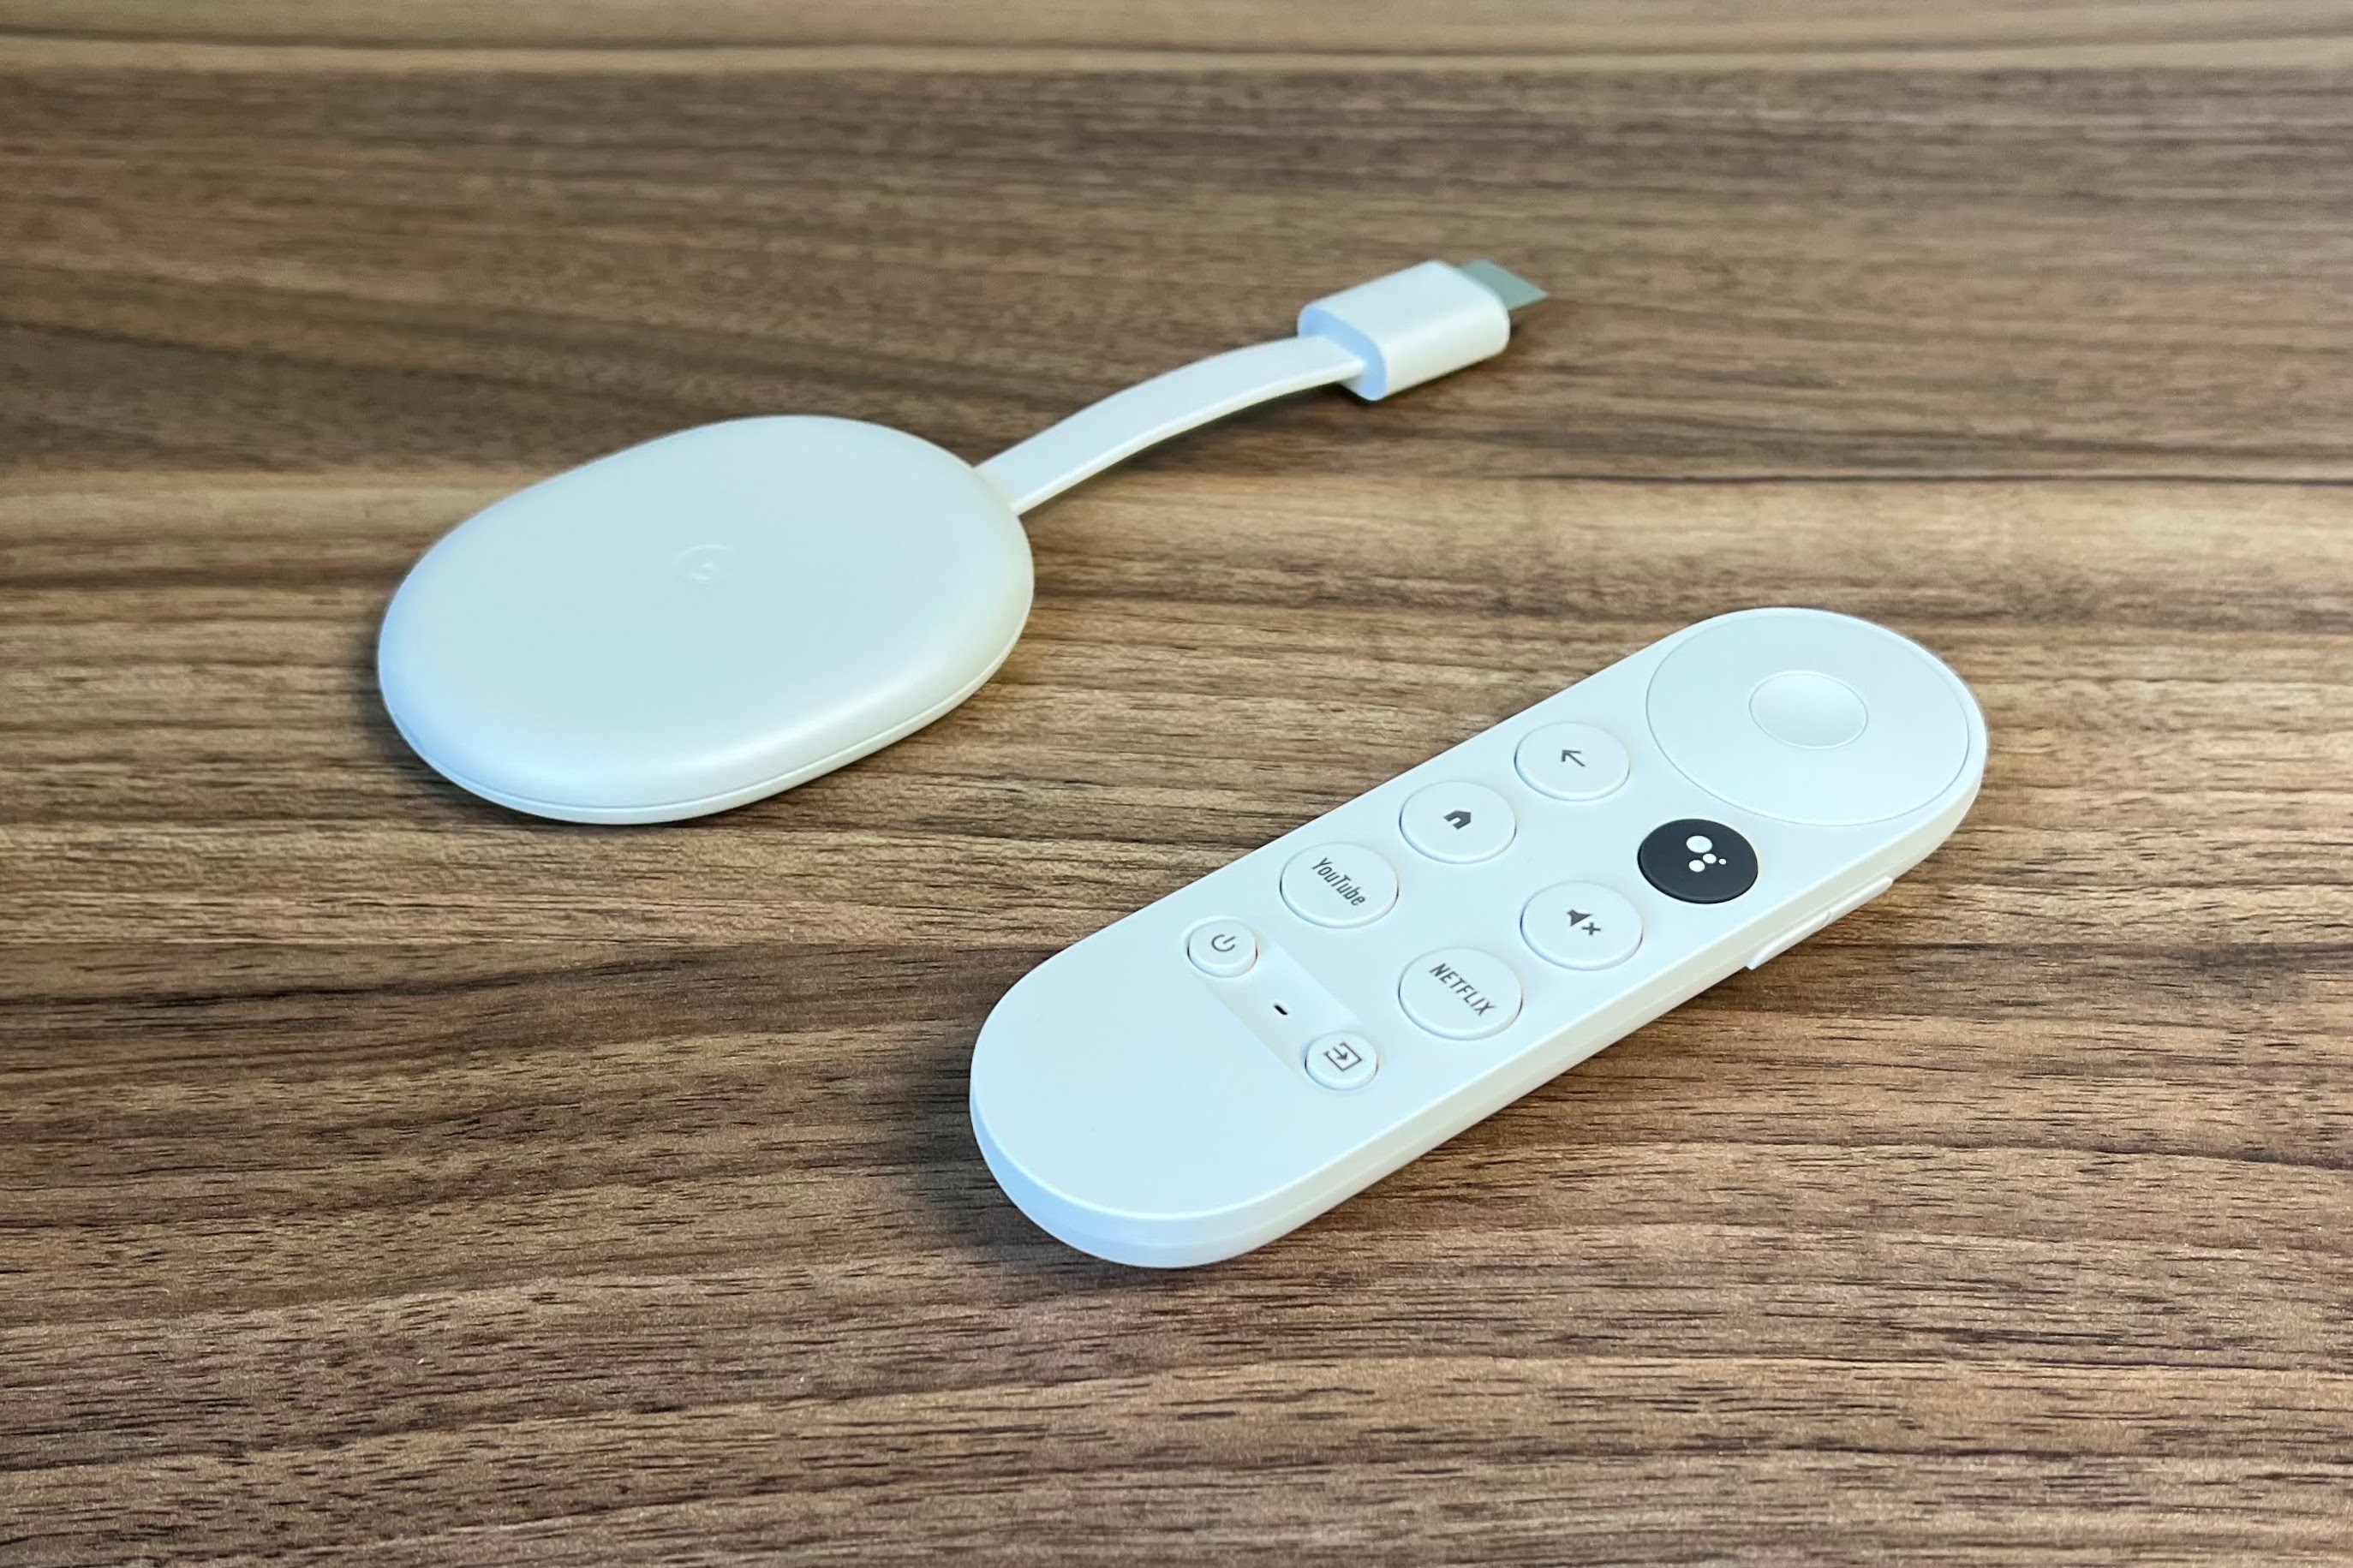 Chromecast с Google TV (HD) — лучший недорогой медиа-стример